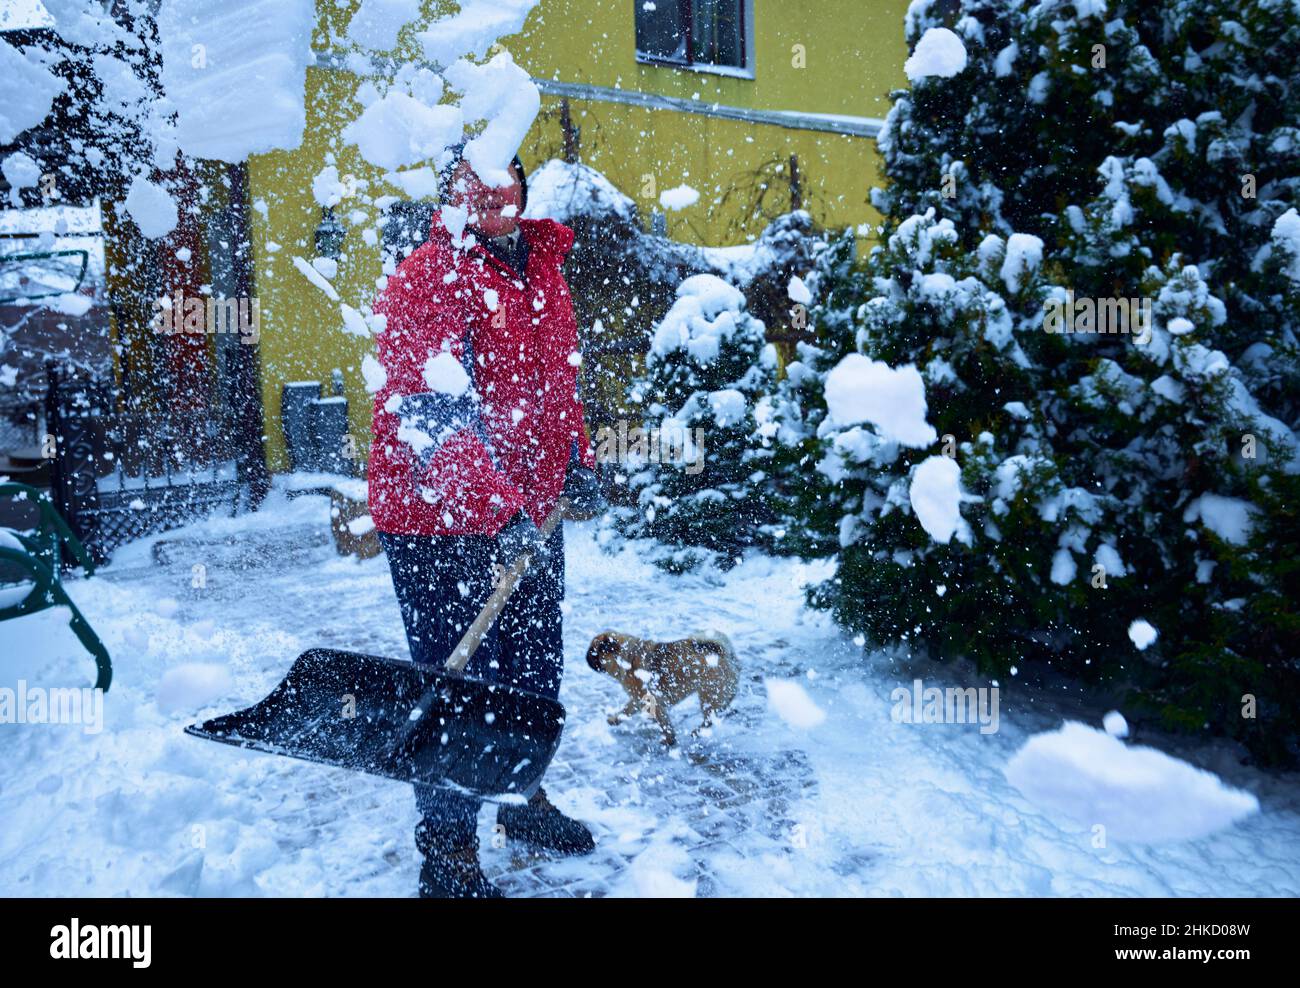 Donna adulta matura con pala da neve che spezza la neve con cani di razza pug in cortile coperto da neve. Foto Stock